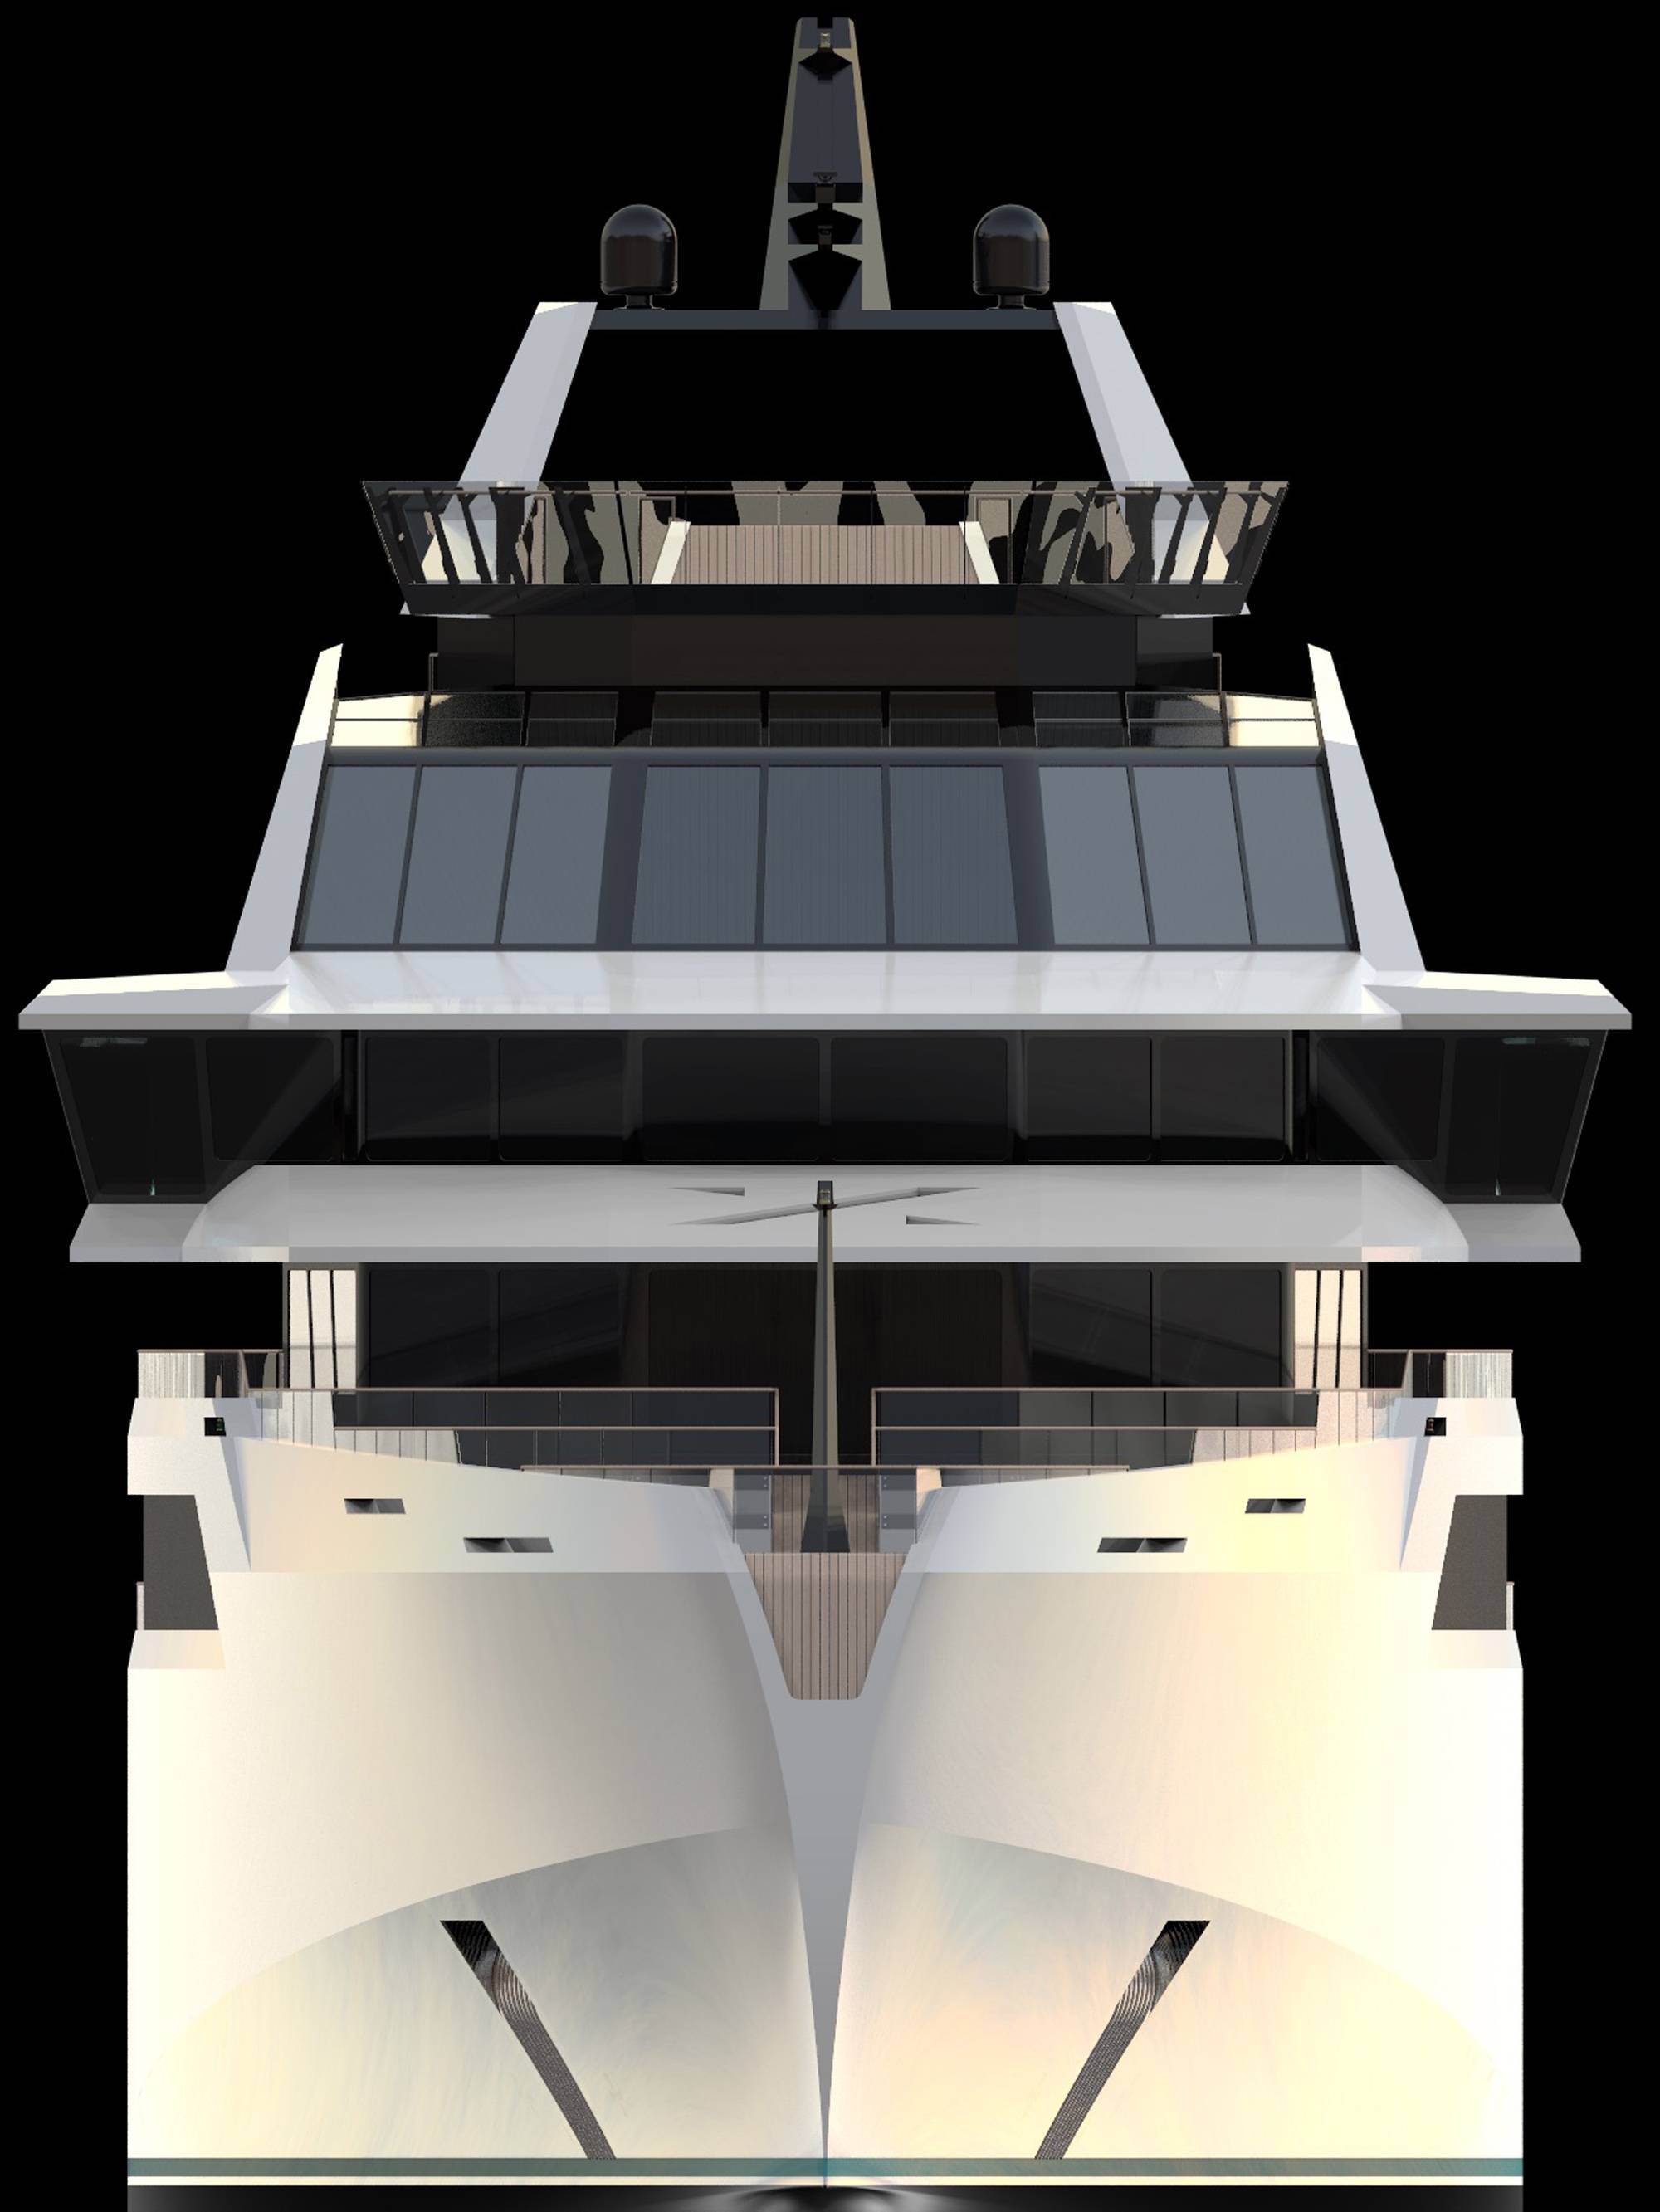 cruise ship concepts